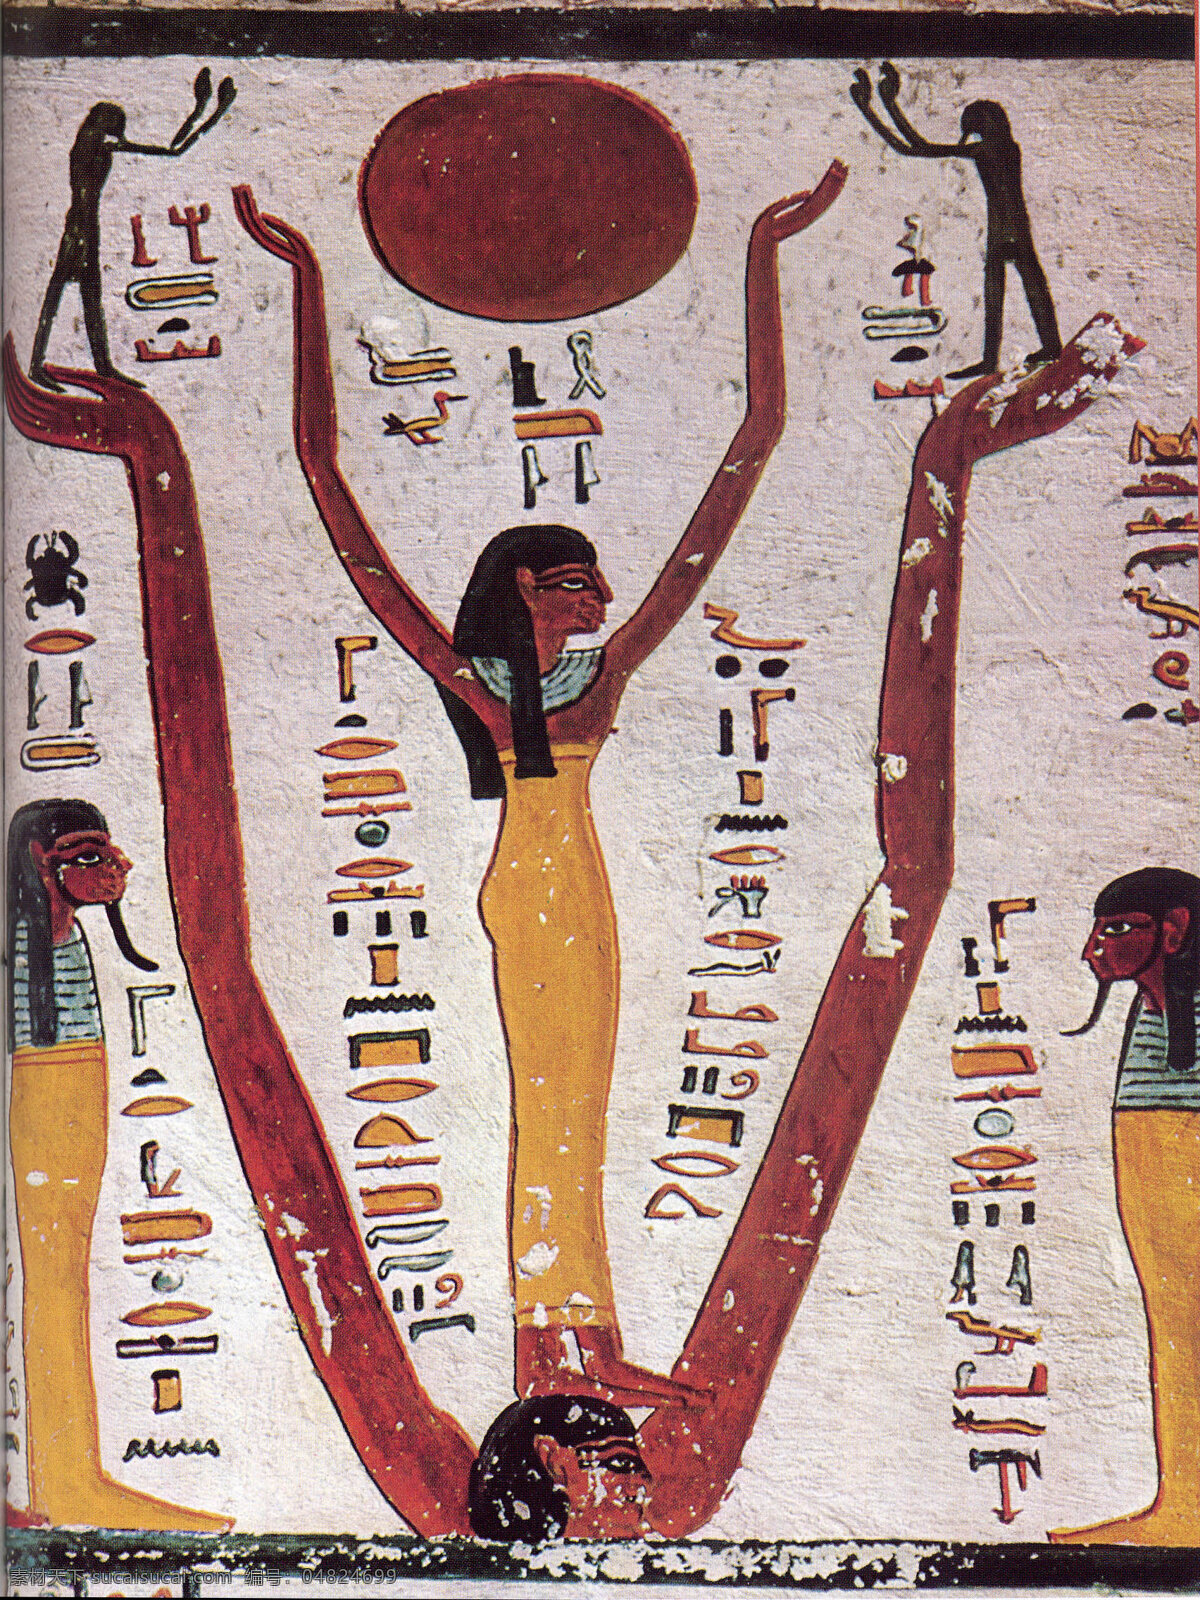 埃及 壁画 人物 古墓 法老 传统 墙壁 古代壁画 美术绘画 文化艺术